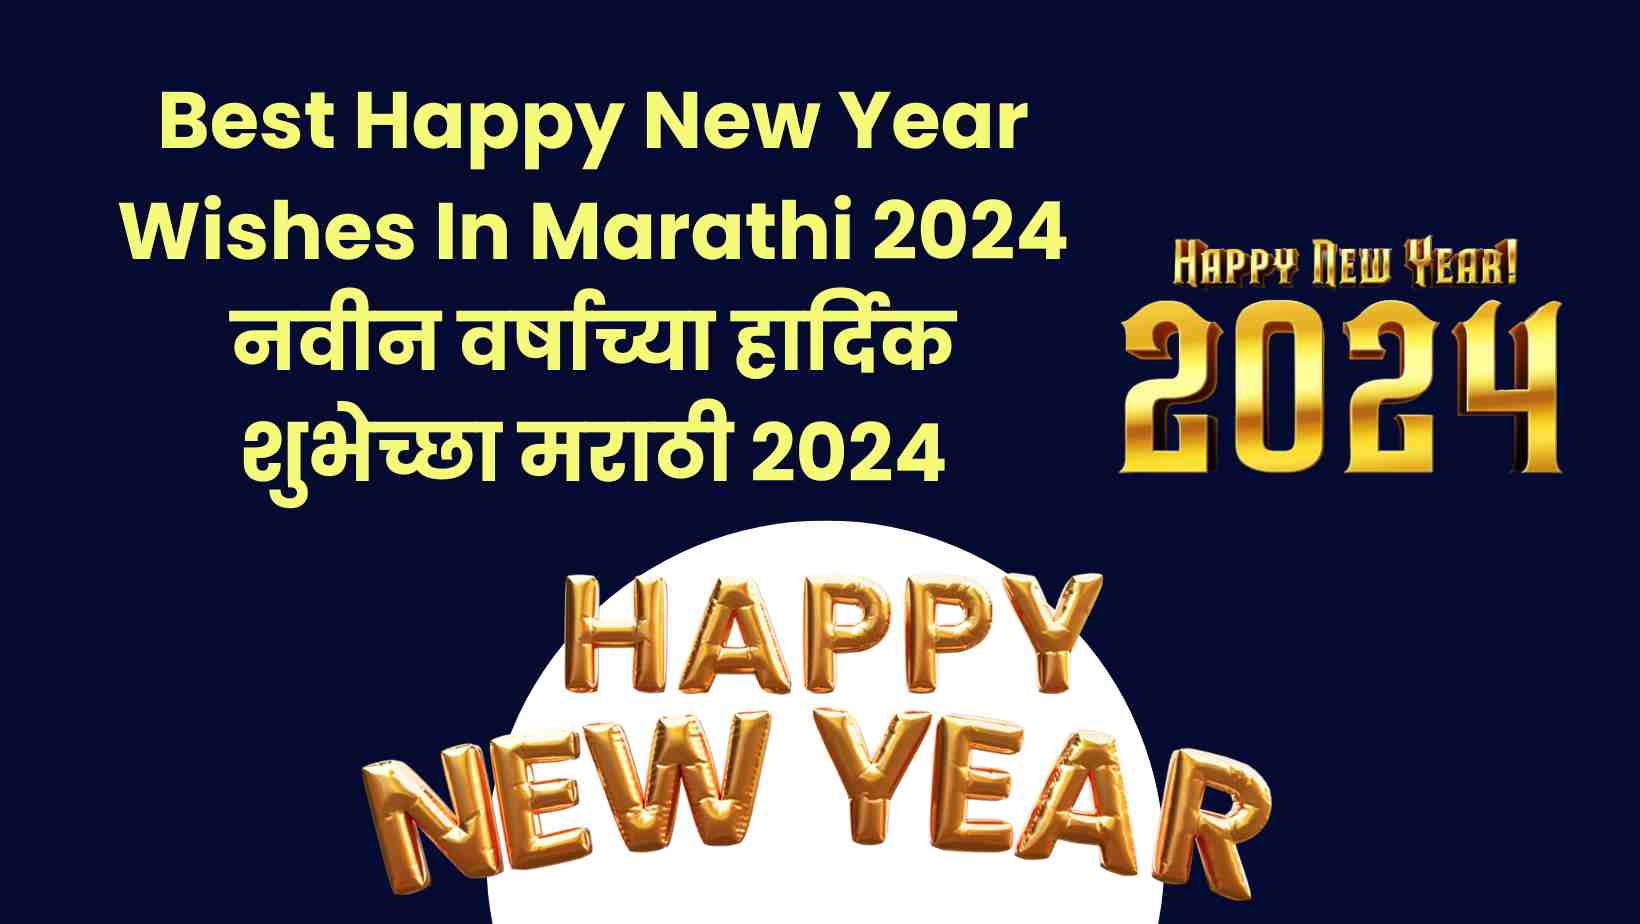 Best Happy New Year Wishes In Marathi 2024 नवीन वर्षाच्या हार्दिक शुभेच्छा मराठी २०२४